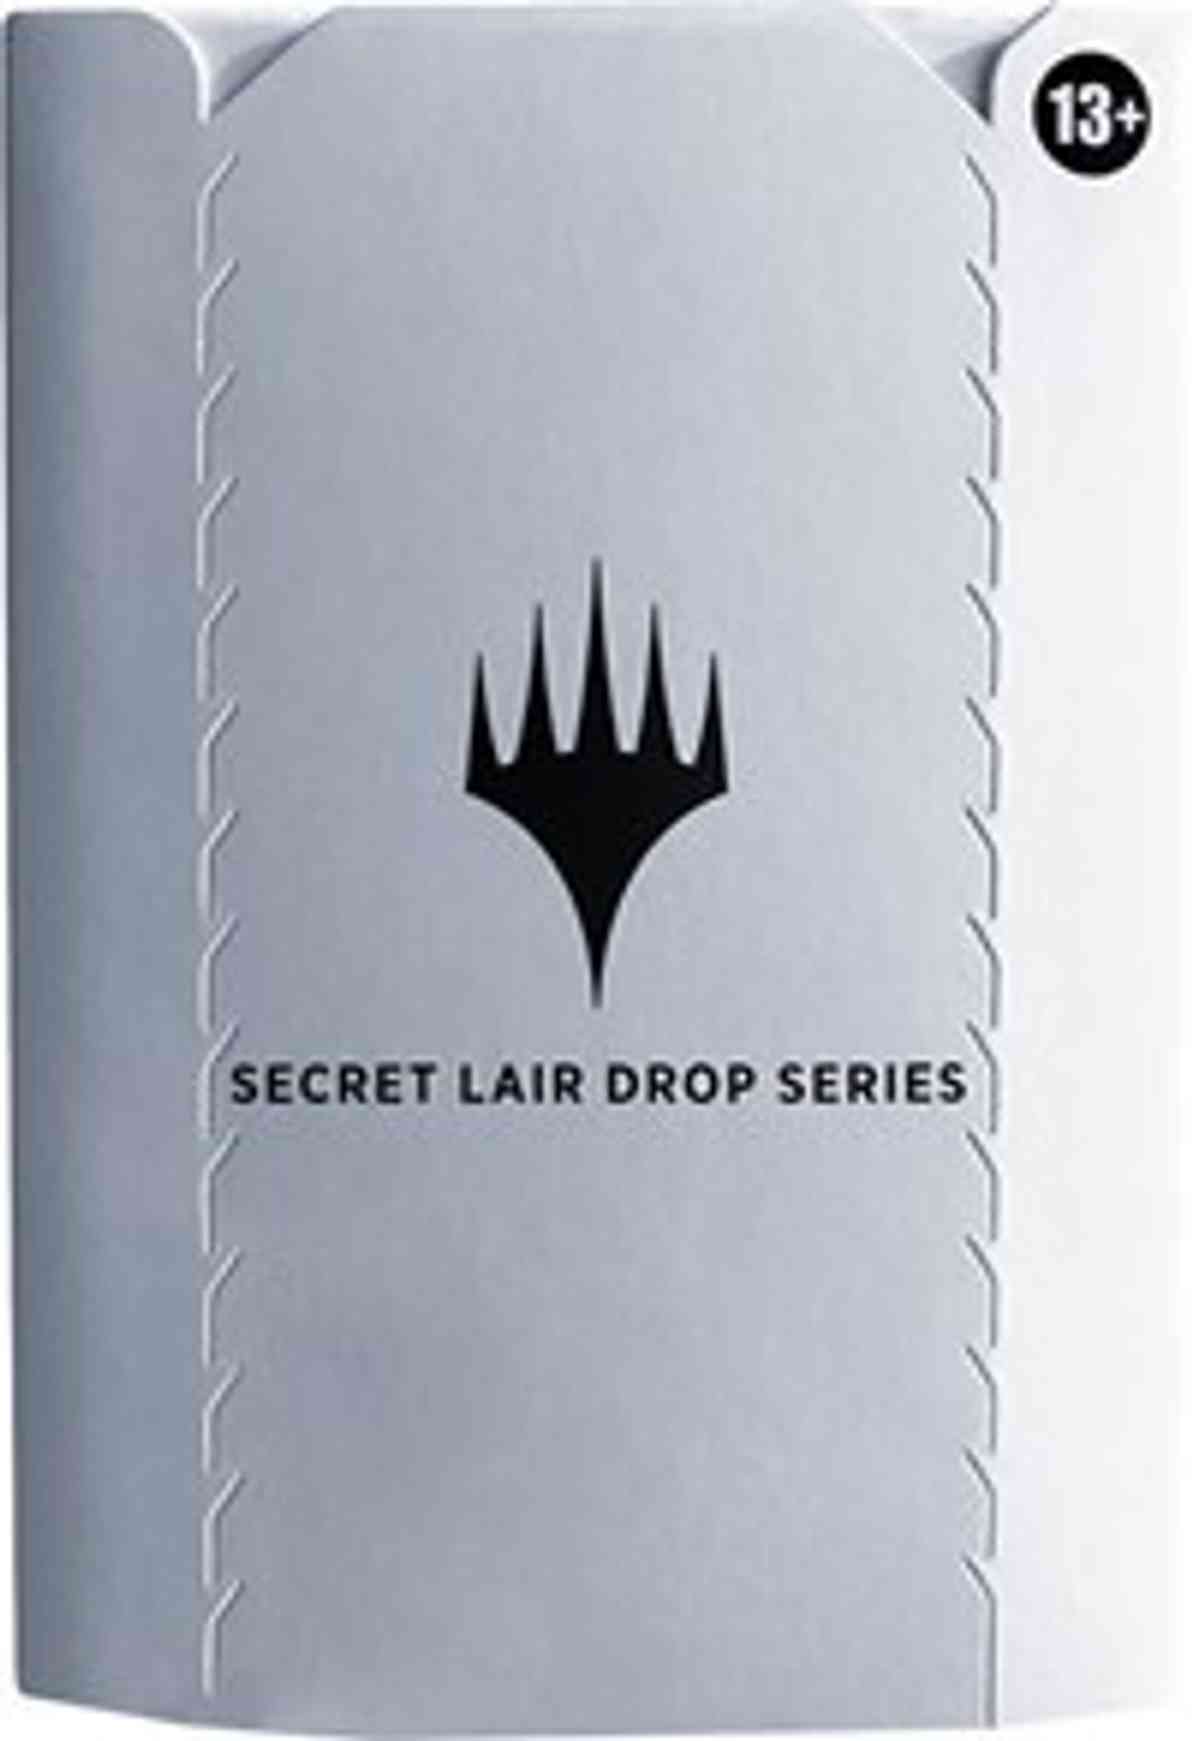 Secret Lair Drop: Purrfection magic card front